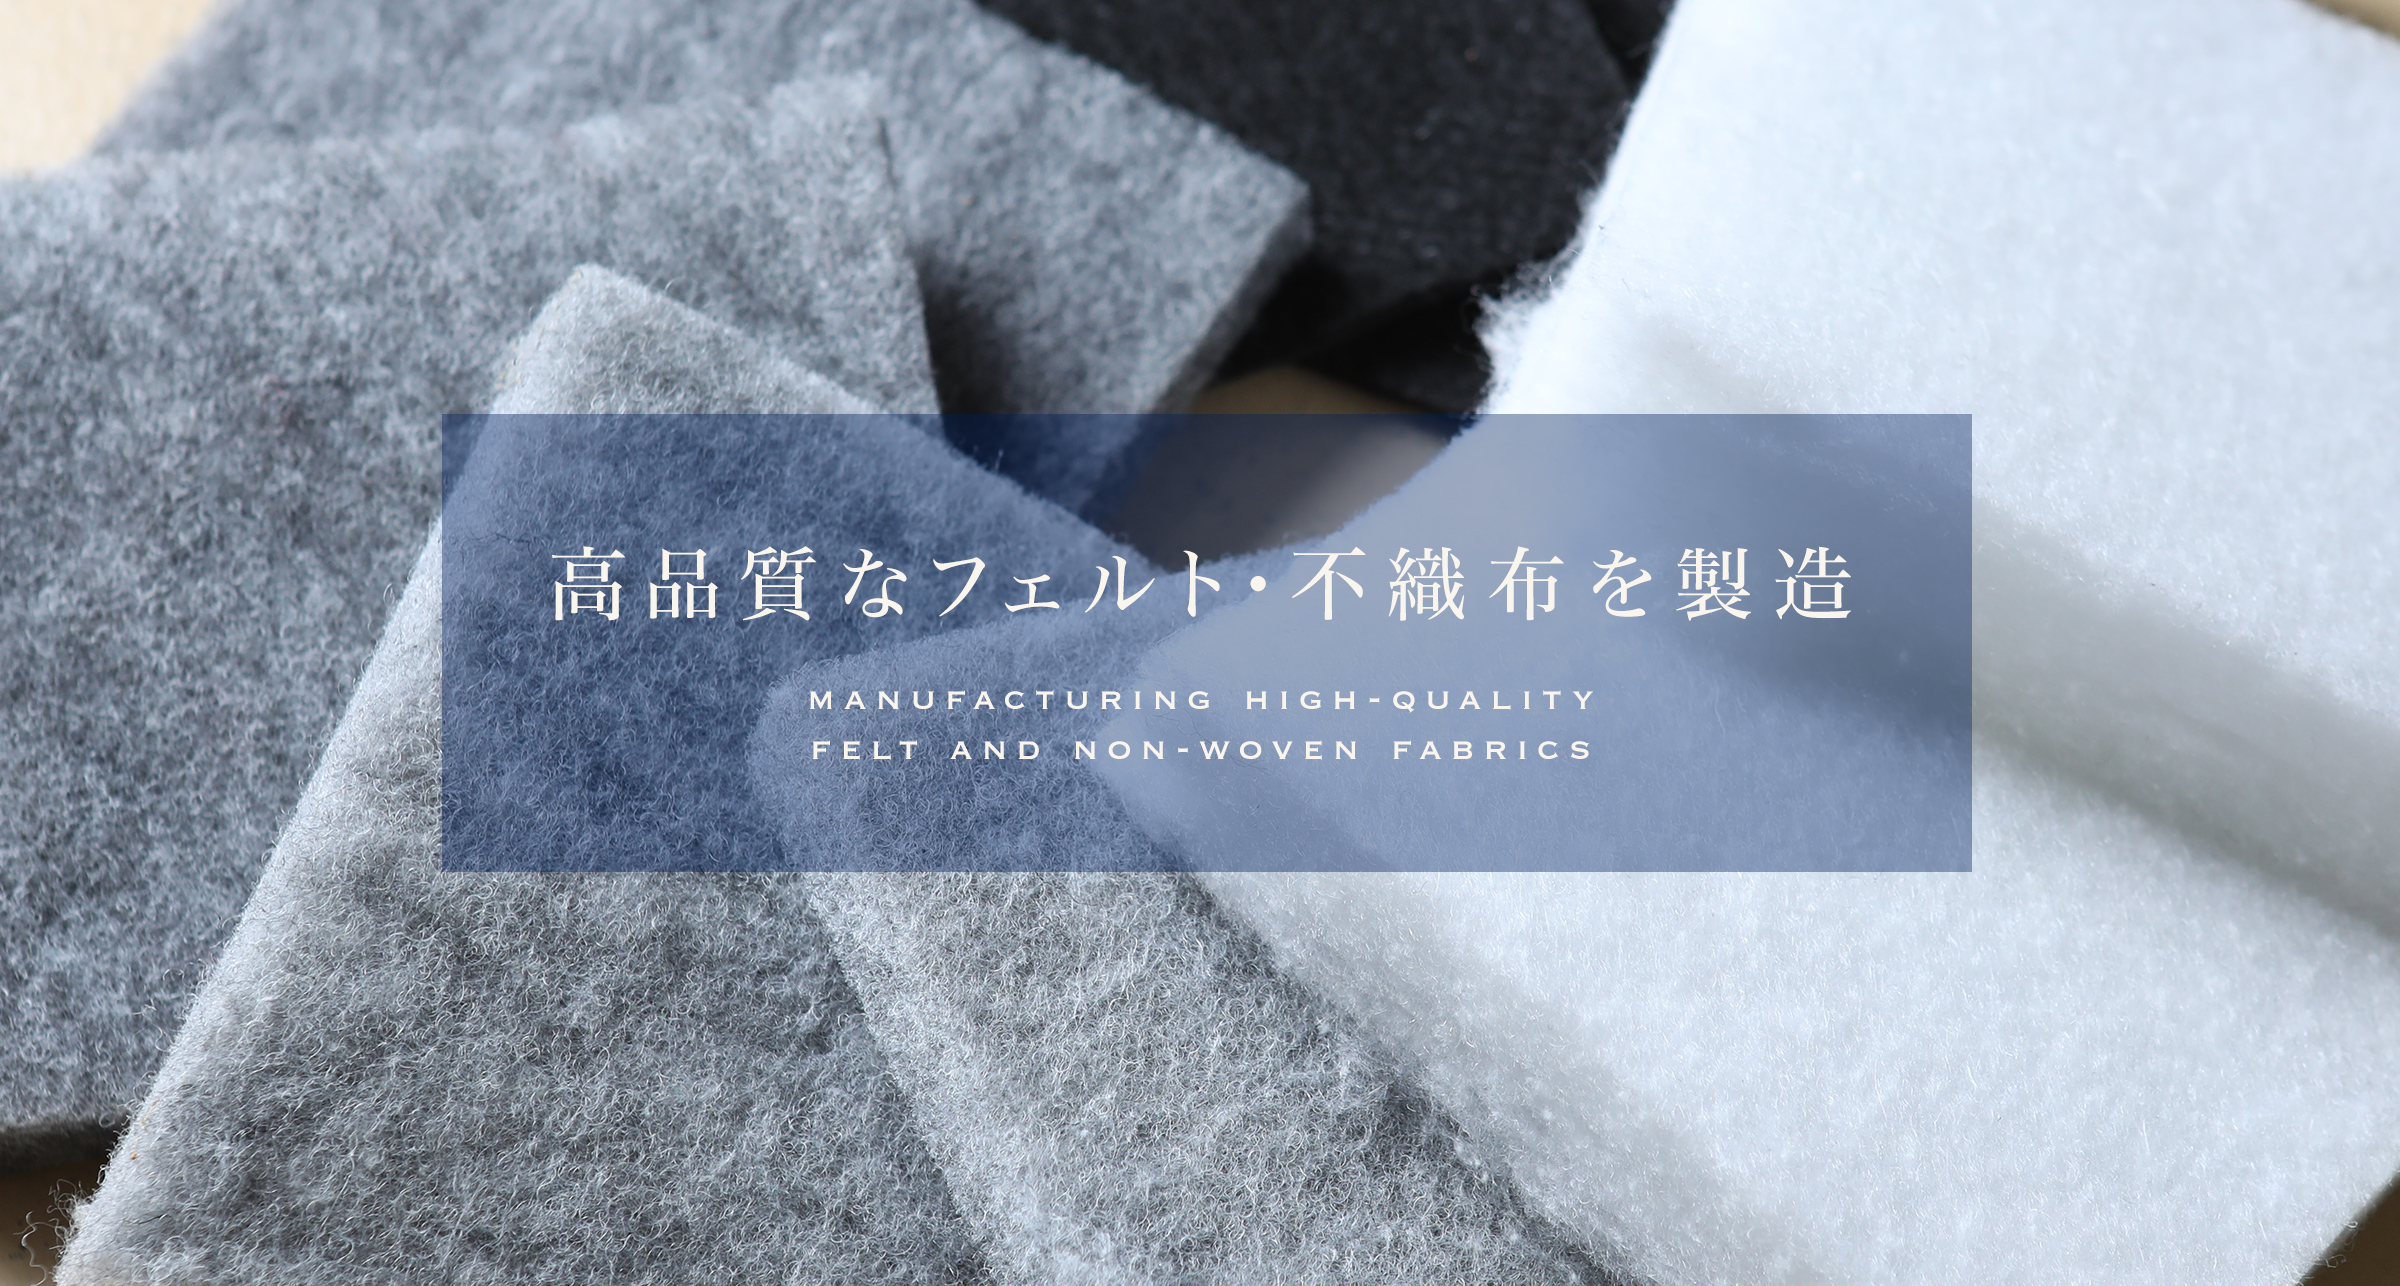 高品質なフェルト・不織布を製造